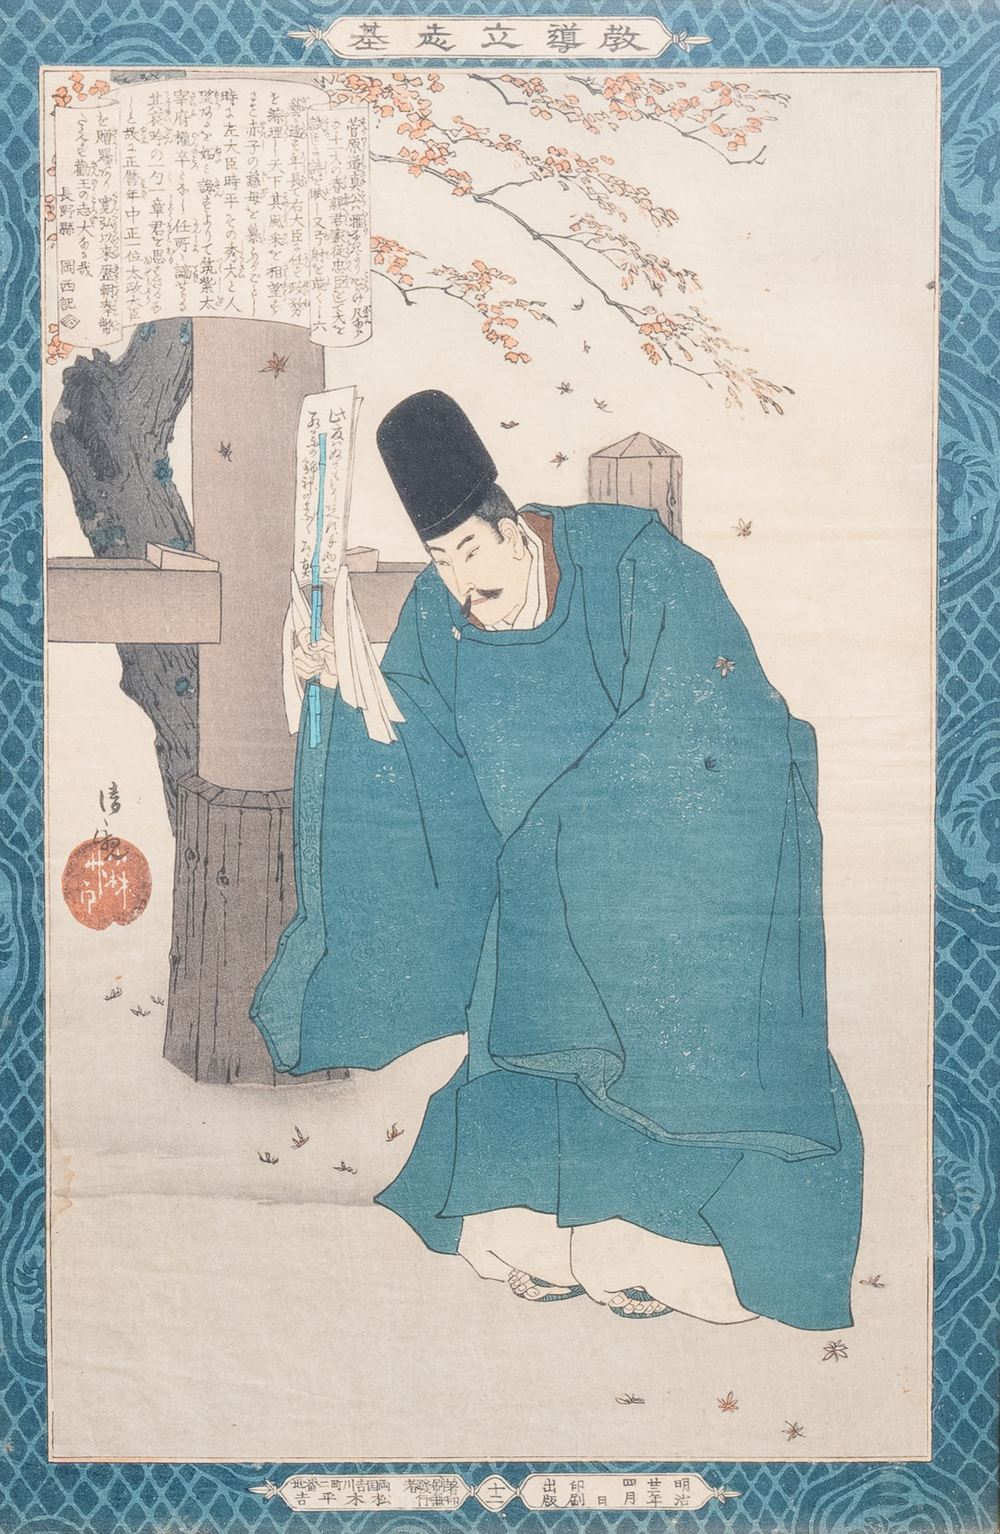 Kobayashi Kiyochika (Japon, 1847&ndash;1915), estampe sur bois ukiyo-e, ca. 1889: Sugawara no Michizane